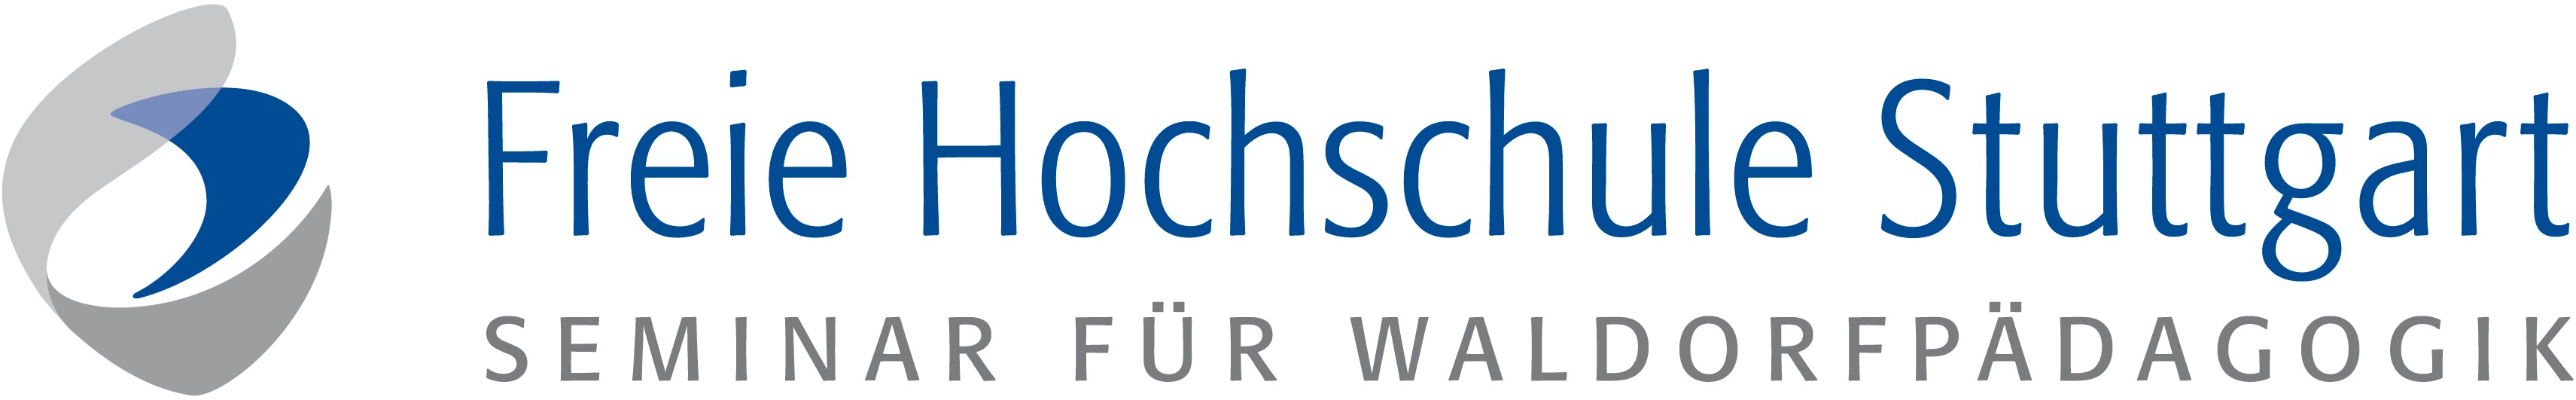 Freie Hochschule Stuttgart - Seminar für Waldorfpädagogik